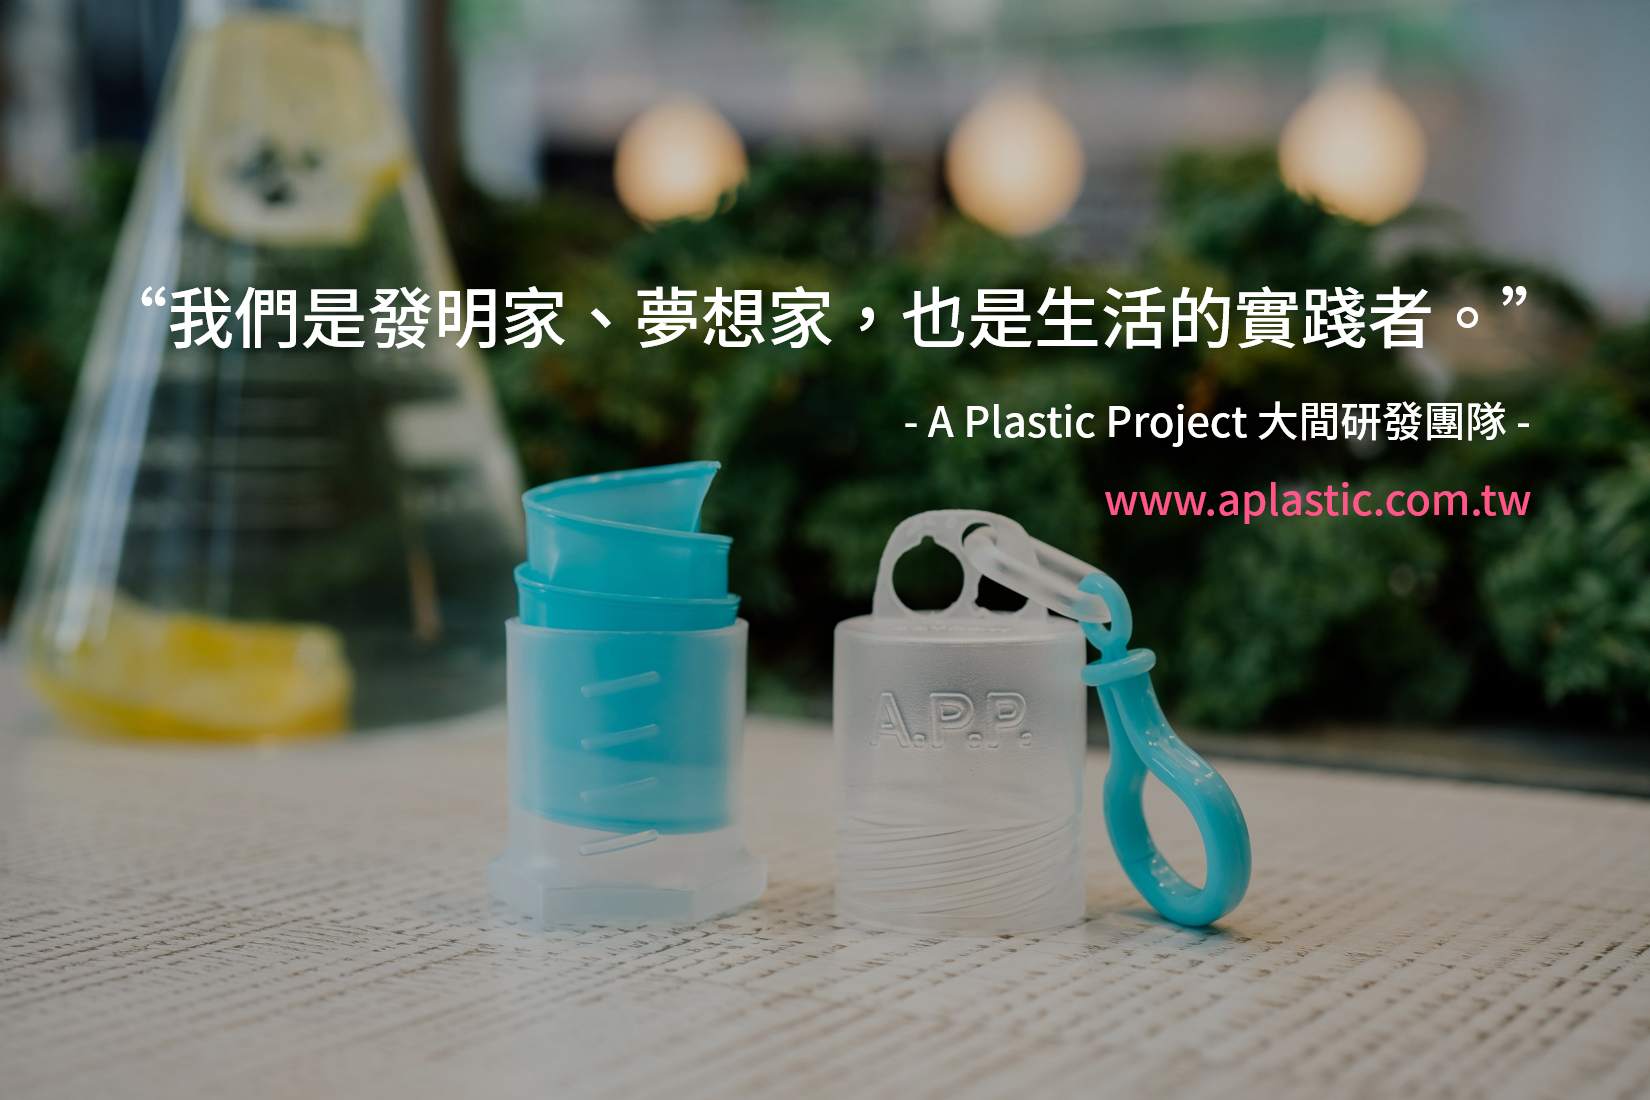 商家訪談：A Plastic Project推廣品牌的秘訣在於建立良好客戶關係 | EasyStore